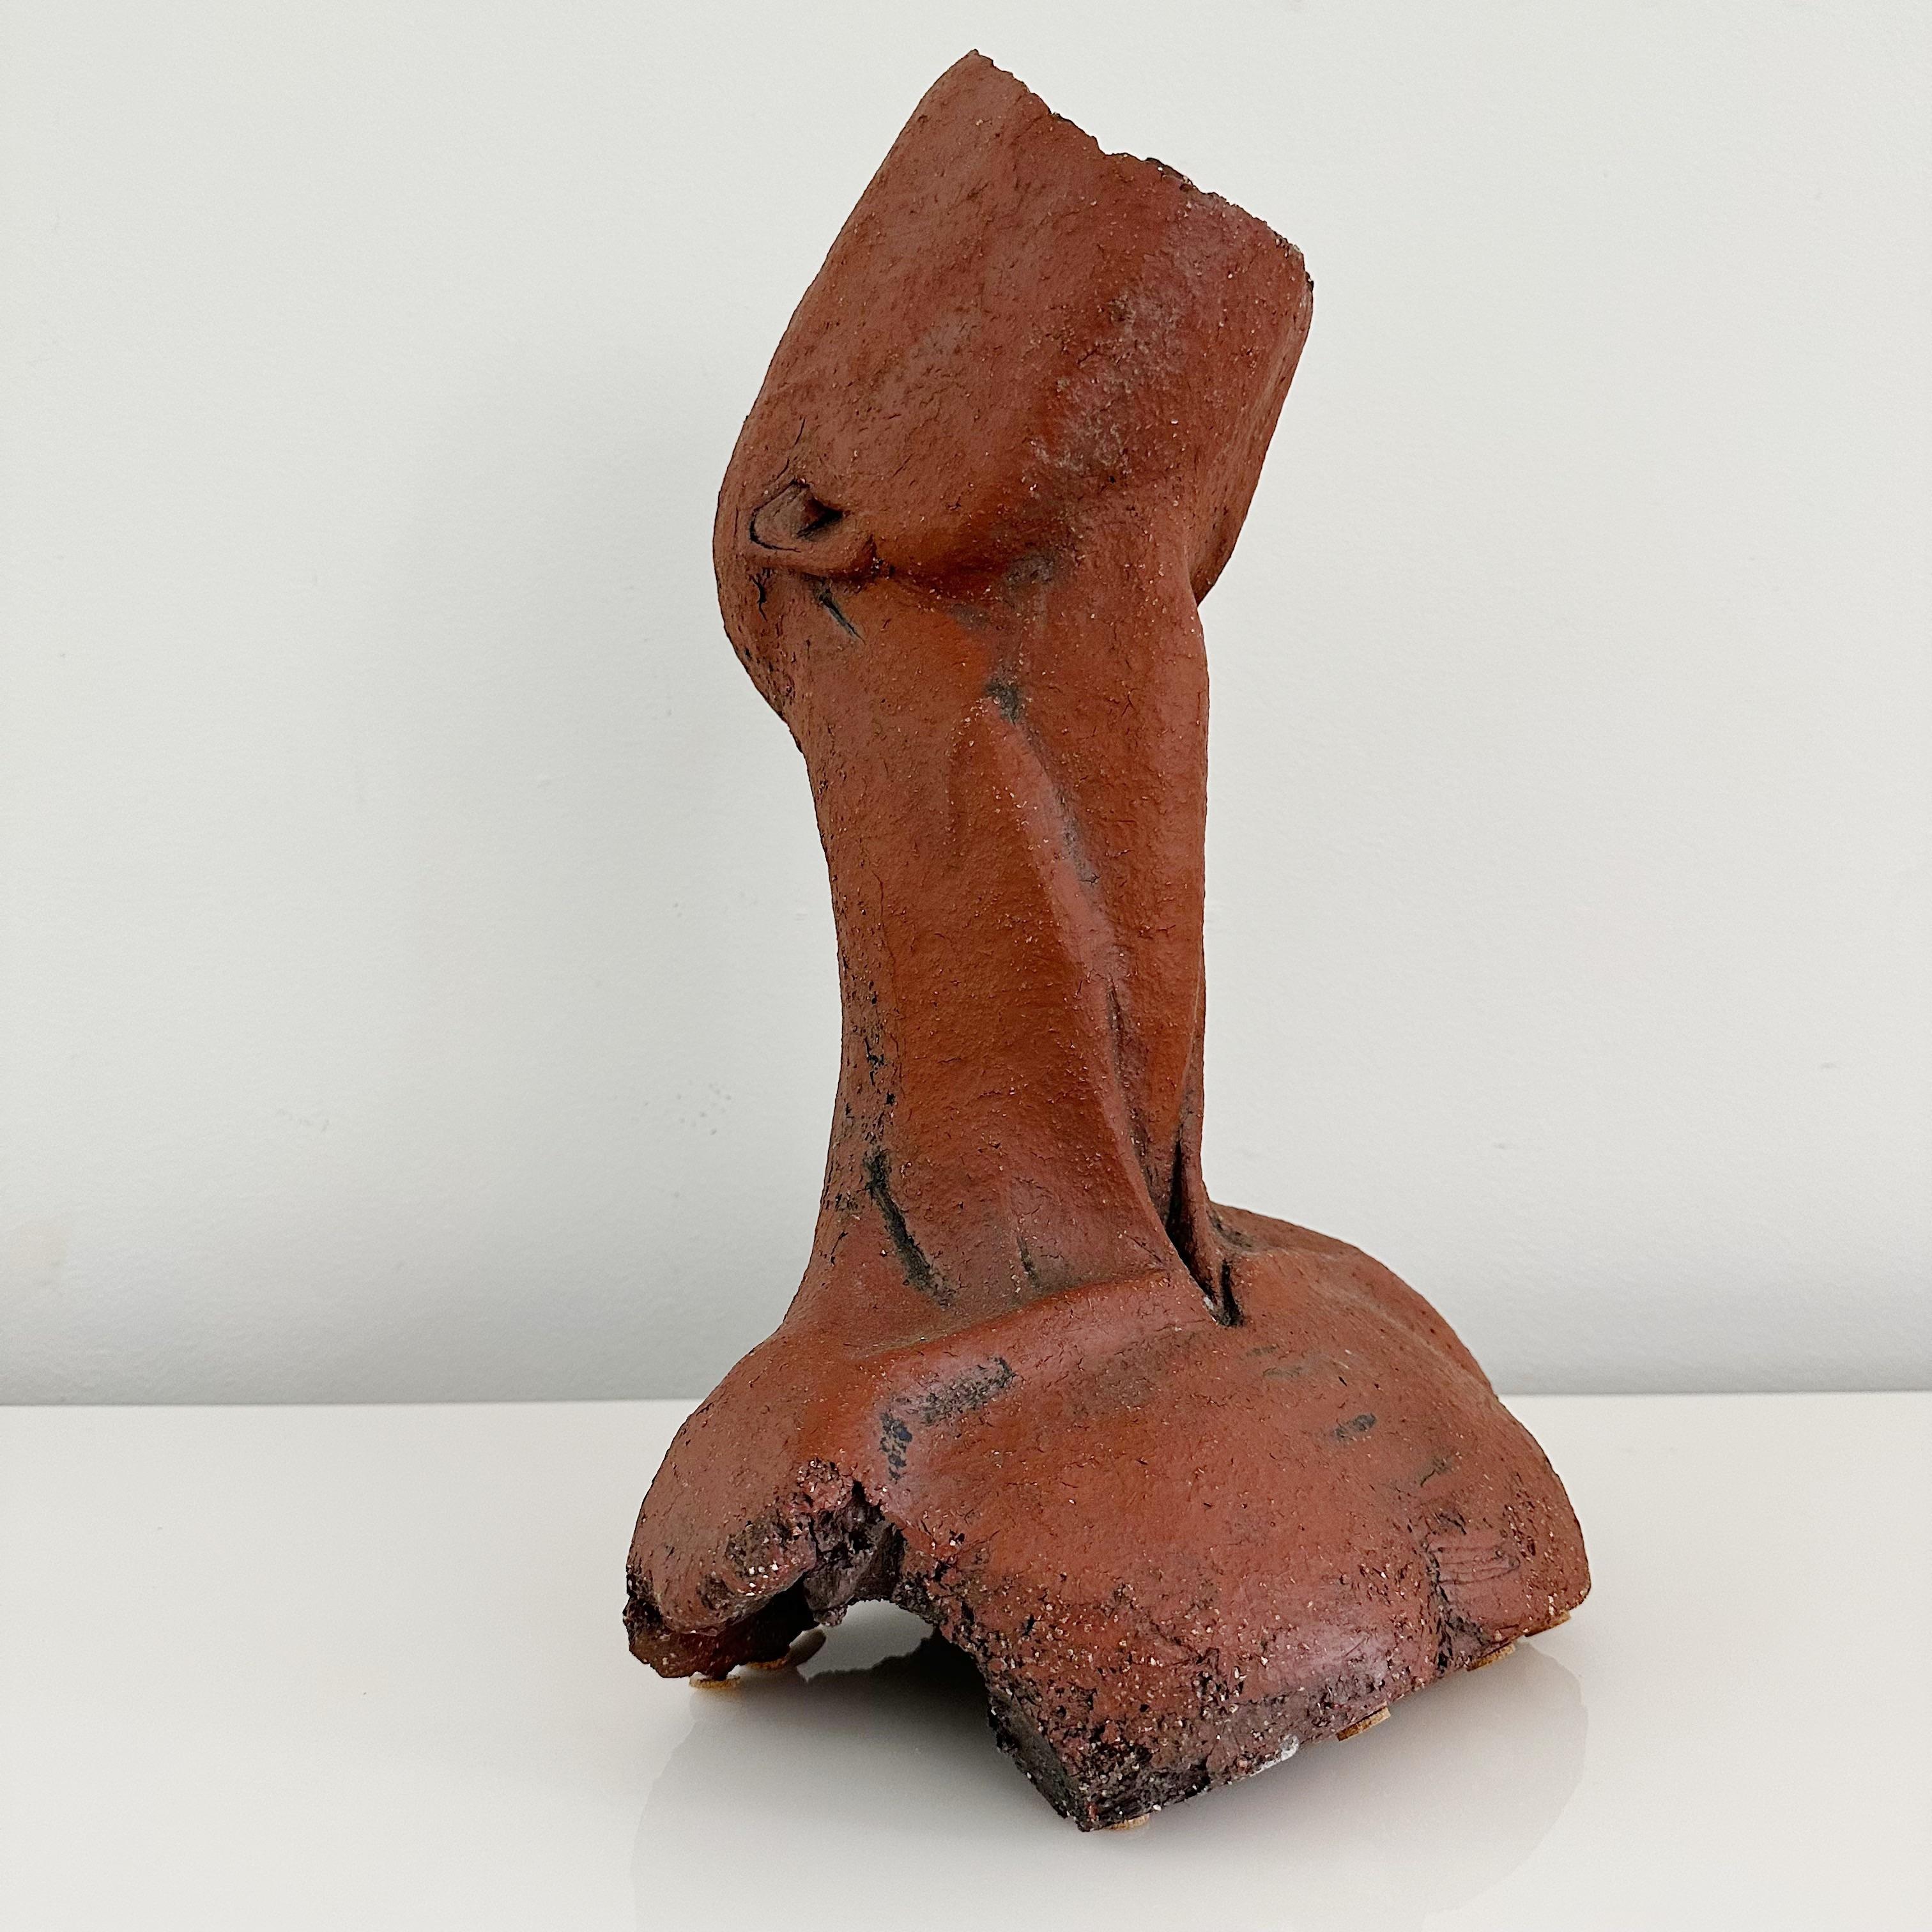 M Bunder - Lampe de table en poterie figurative abstraite

Un captivant buste d'homme sans visage des années 1980, sculpture abstraite en poterie. D'un style moderniste saisissant, cette pièce capture habilement l'essence du mystère et de l'intrigue